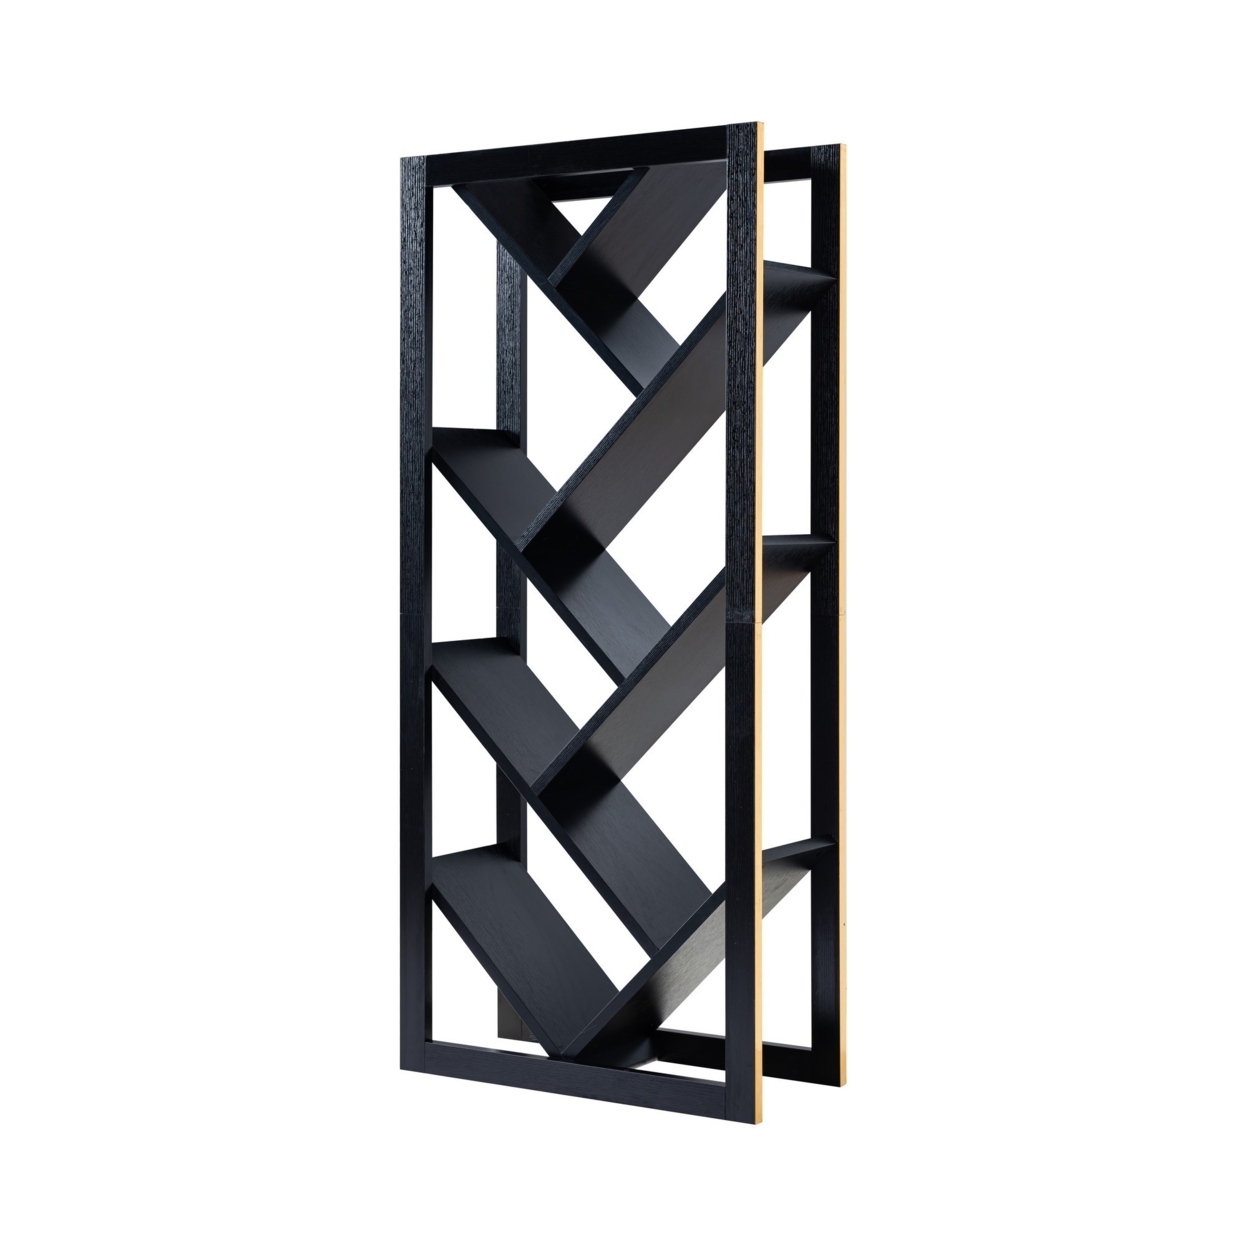 Rectangular Wooden Frame Bookcase With V Shaped Open Shelves, Black- Saltoro Sherpi